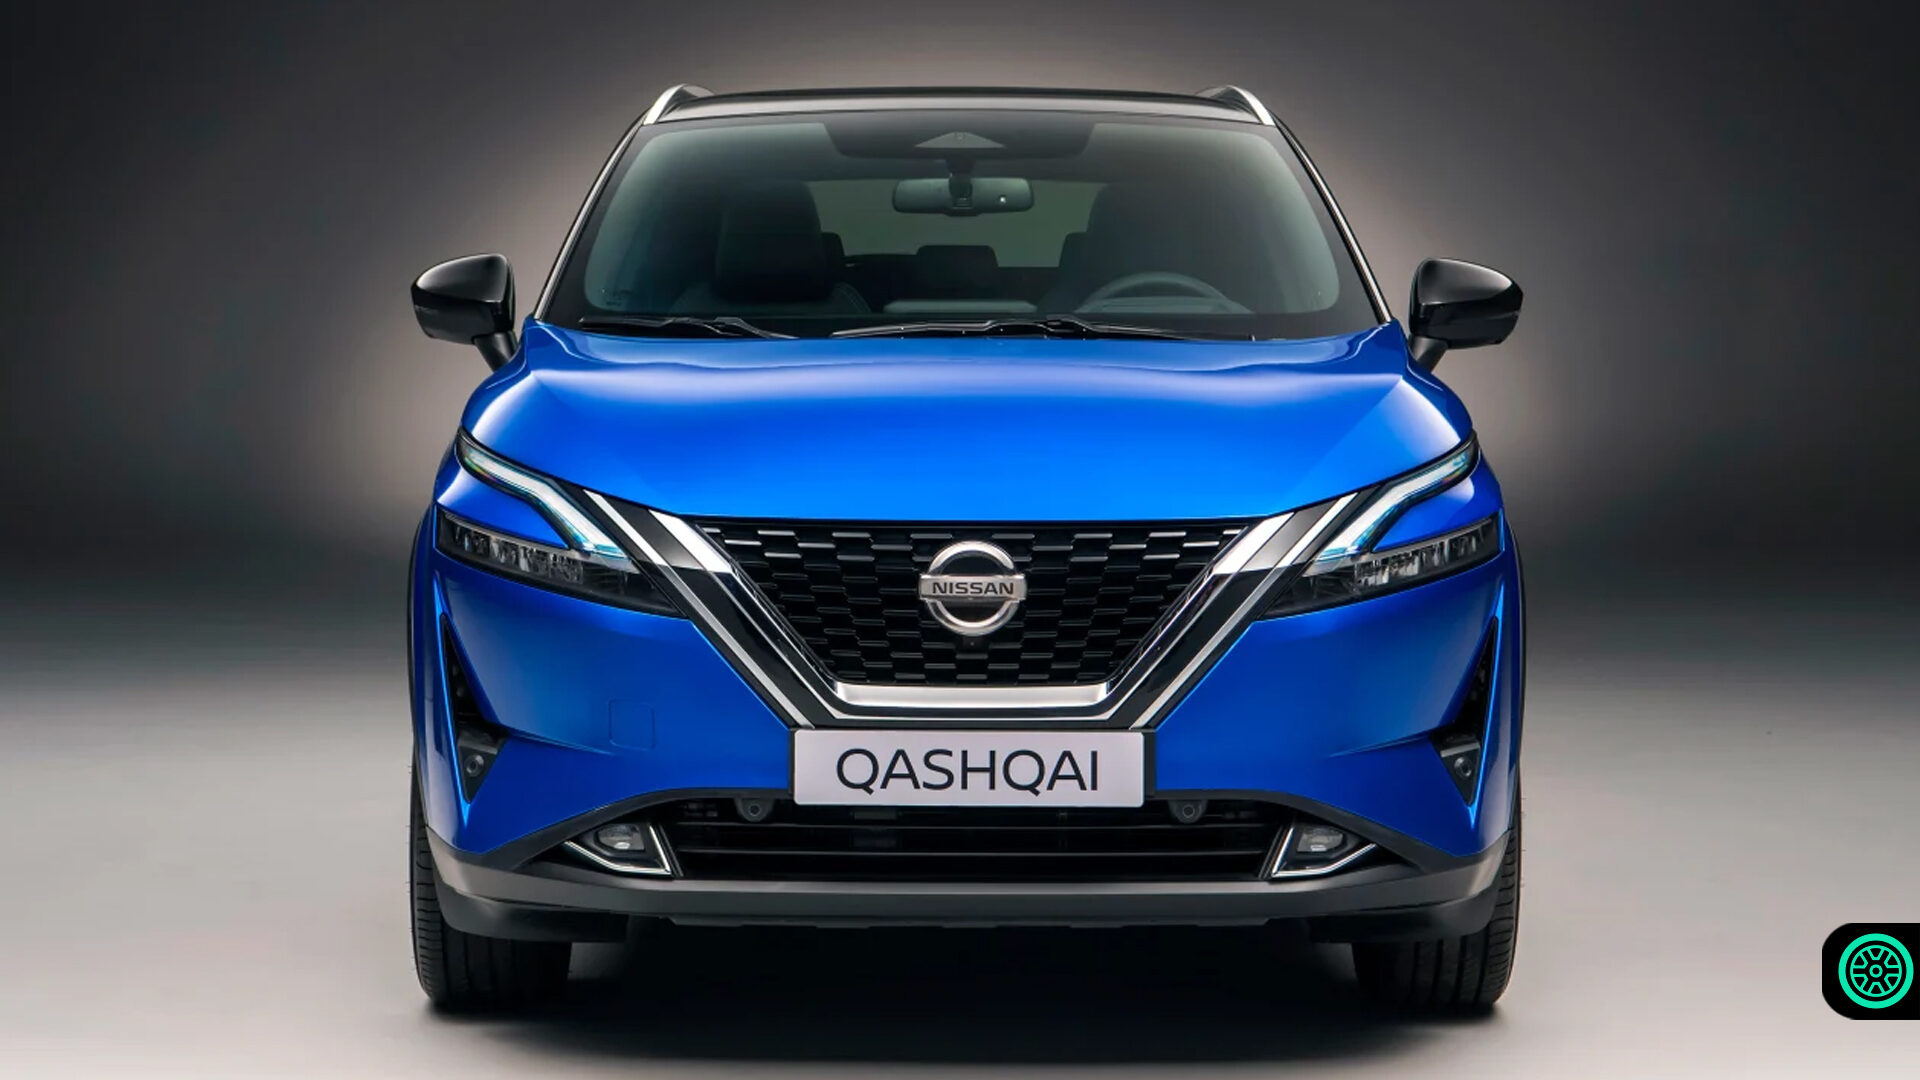 Nissan Qashqai 835 bin TL'ye sınırlı sayıda kullanıcılara sunuluyor 1